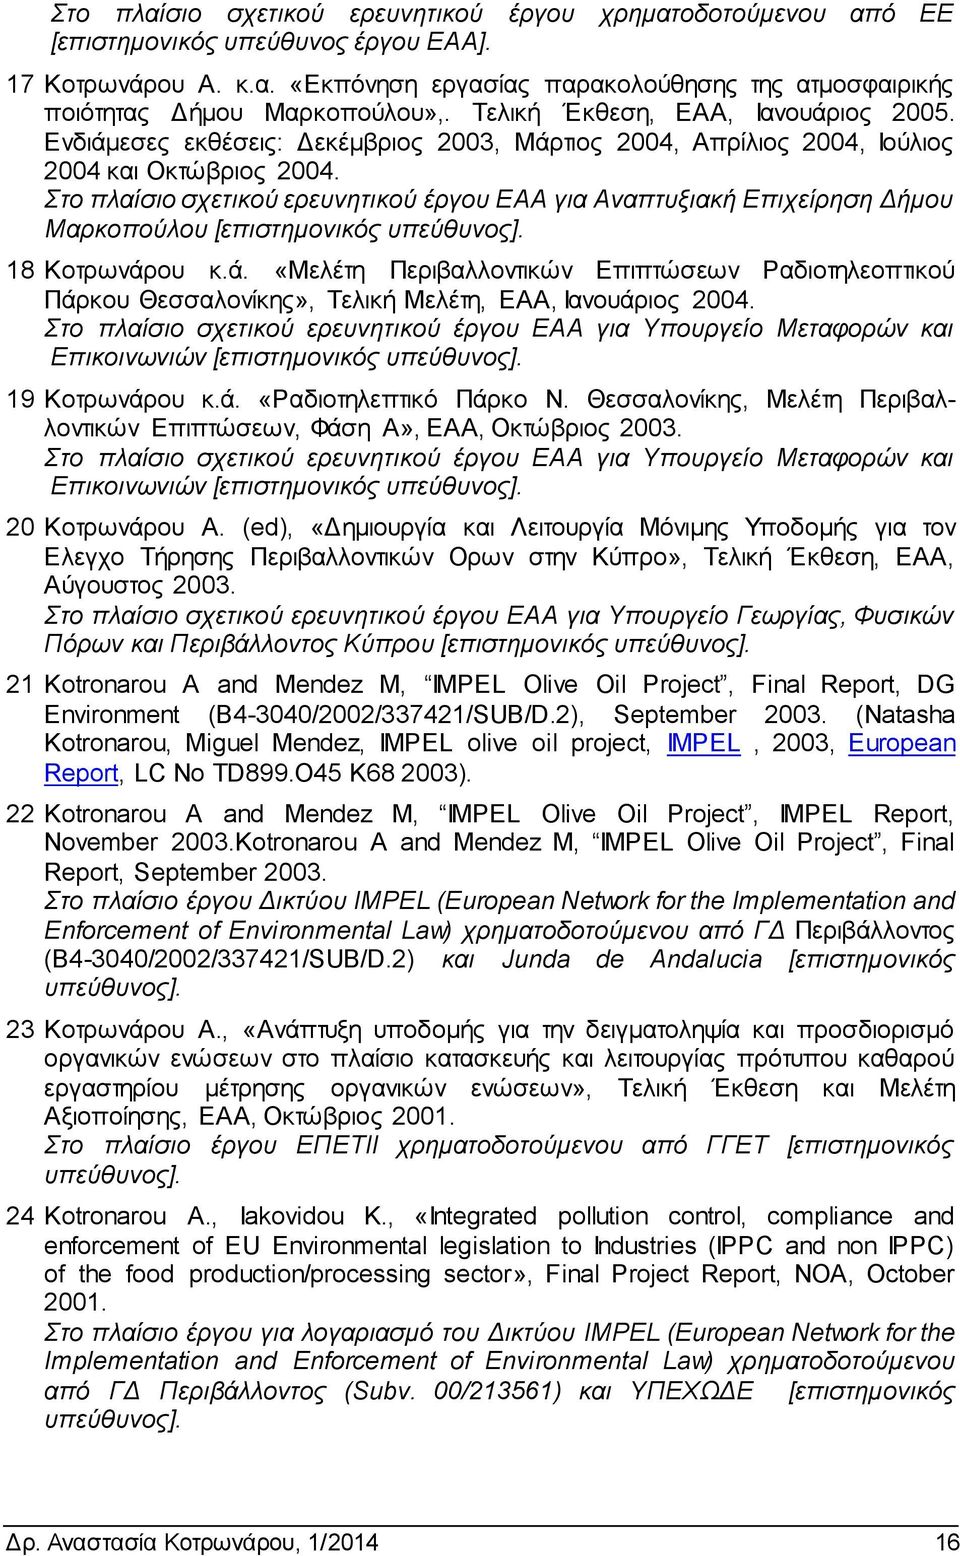 Στο πλαίσιο σχετικού ερευνητικού έργου ΕΑΑ για Αναπτυξιακή Επιχείρηση Δήμου Μαρκοπούλου [επιστημονικός υπεύθυνος]. 18 Κοτρωνάρ